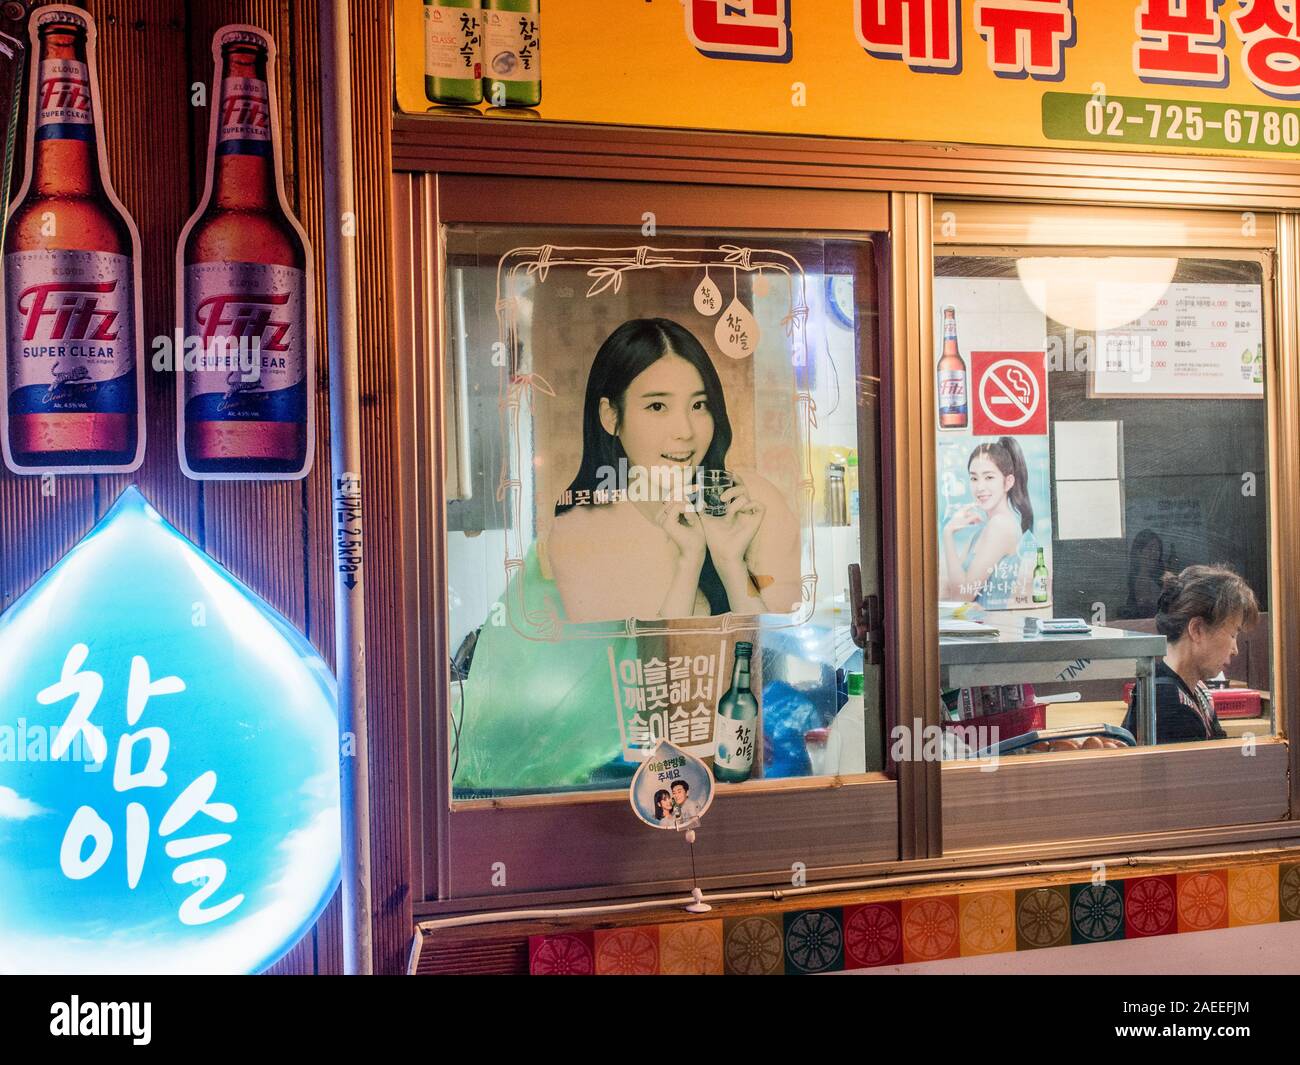 Ristorante finestra, alcol annunci di liquore con le giovani donne, donna lavoratrice addormentato all'interno, strada notte, Gyeongbokgung, Seoul, Corea del Sud Foto Stock